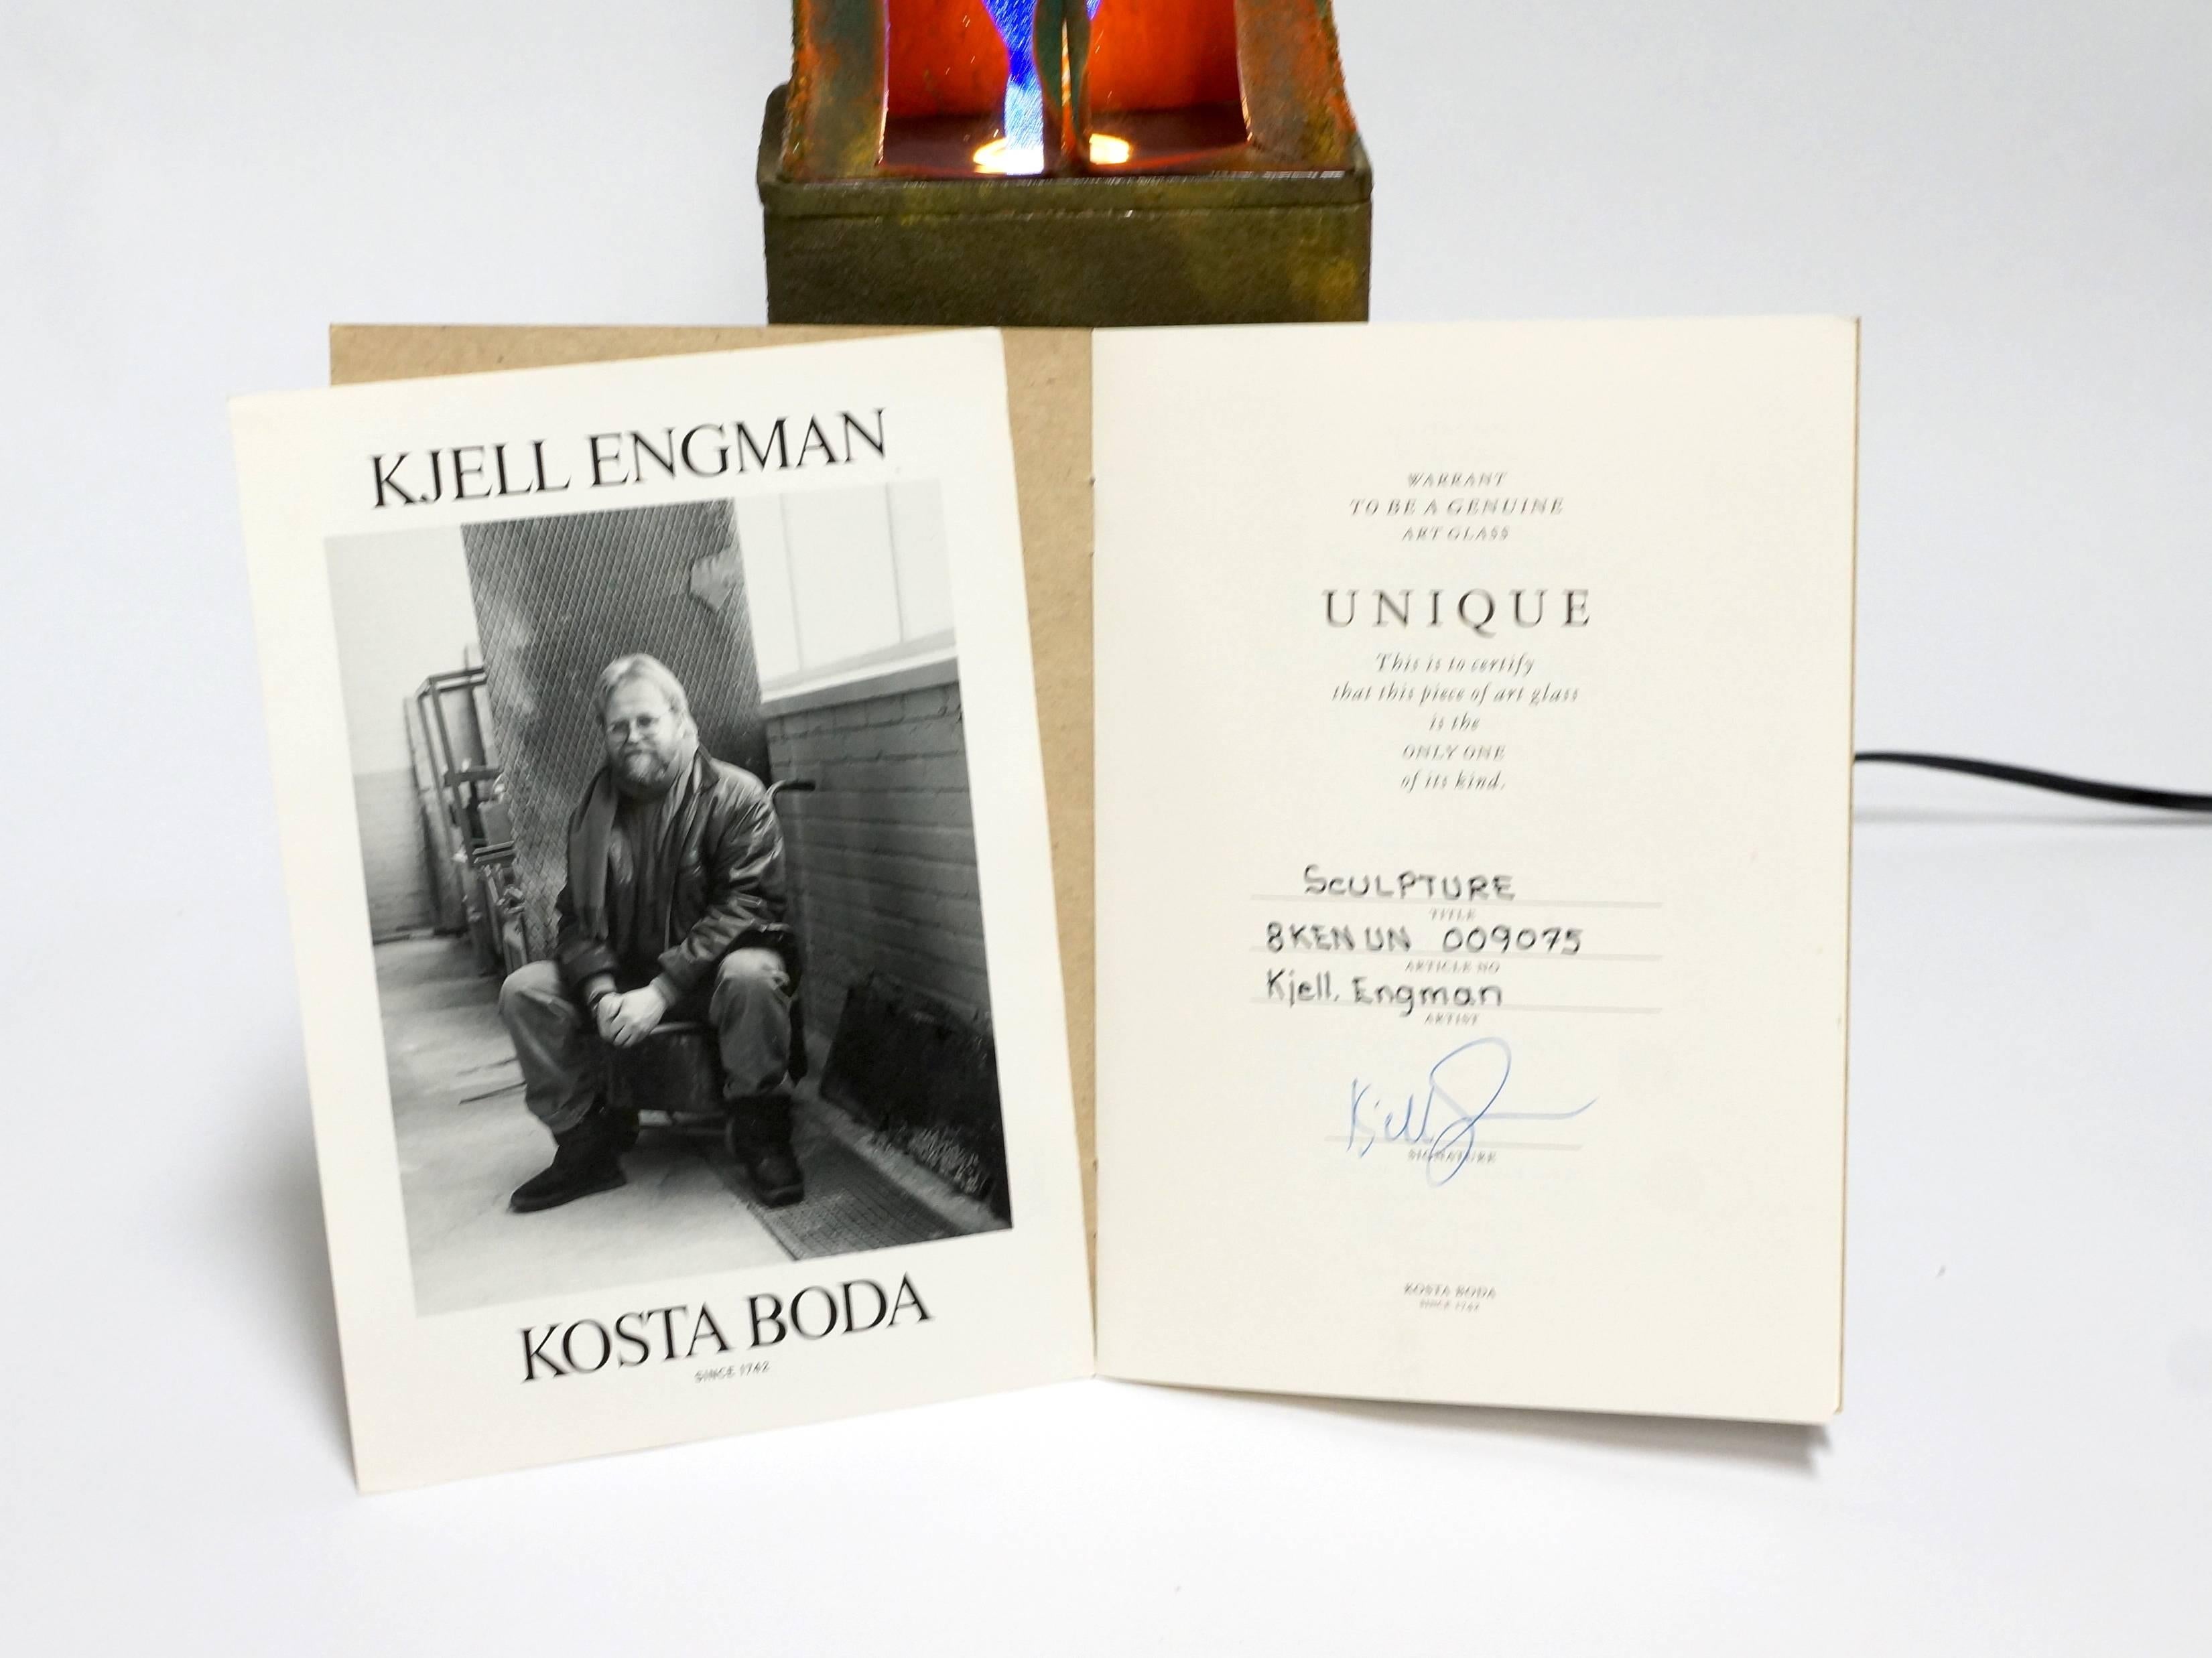 Swedish Art Glass and Light Sculpture by Kjell Engman for Kosta Boda For Sale 1